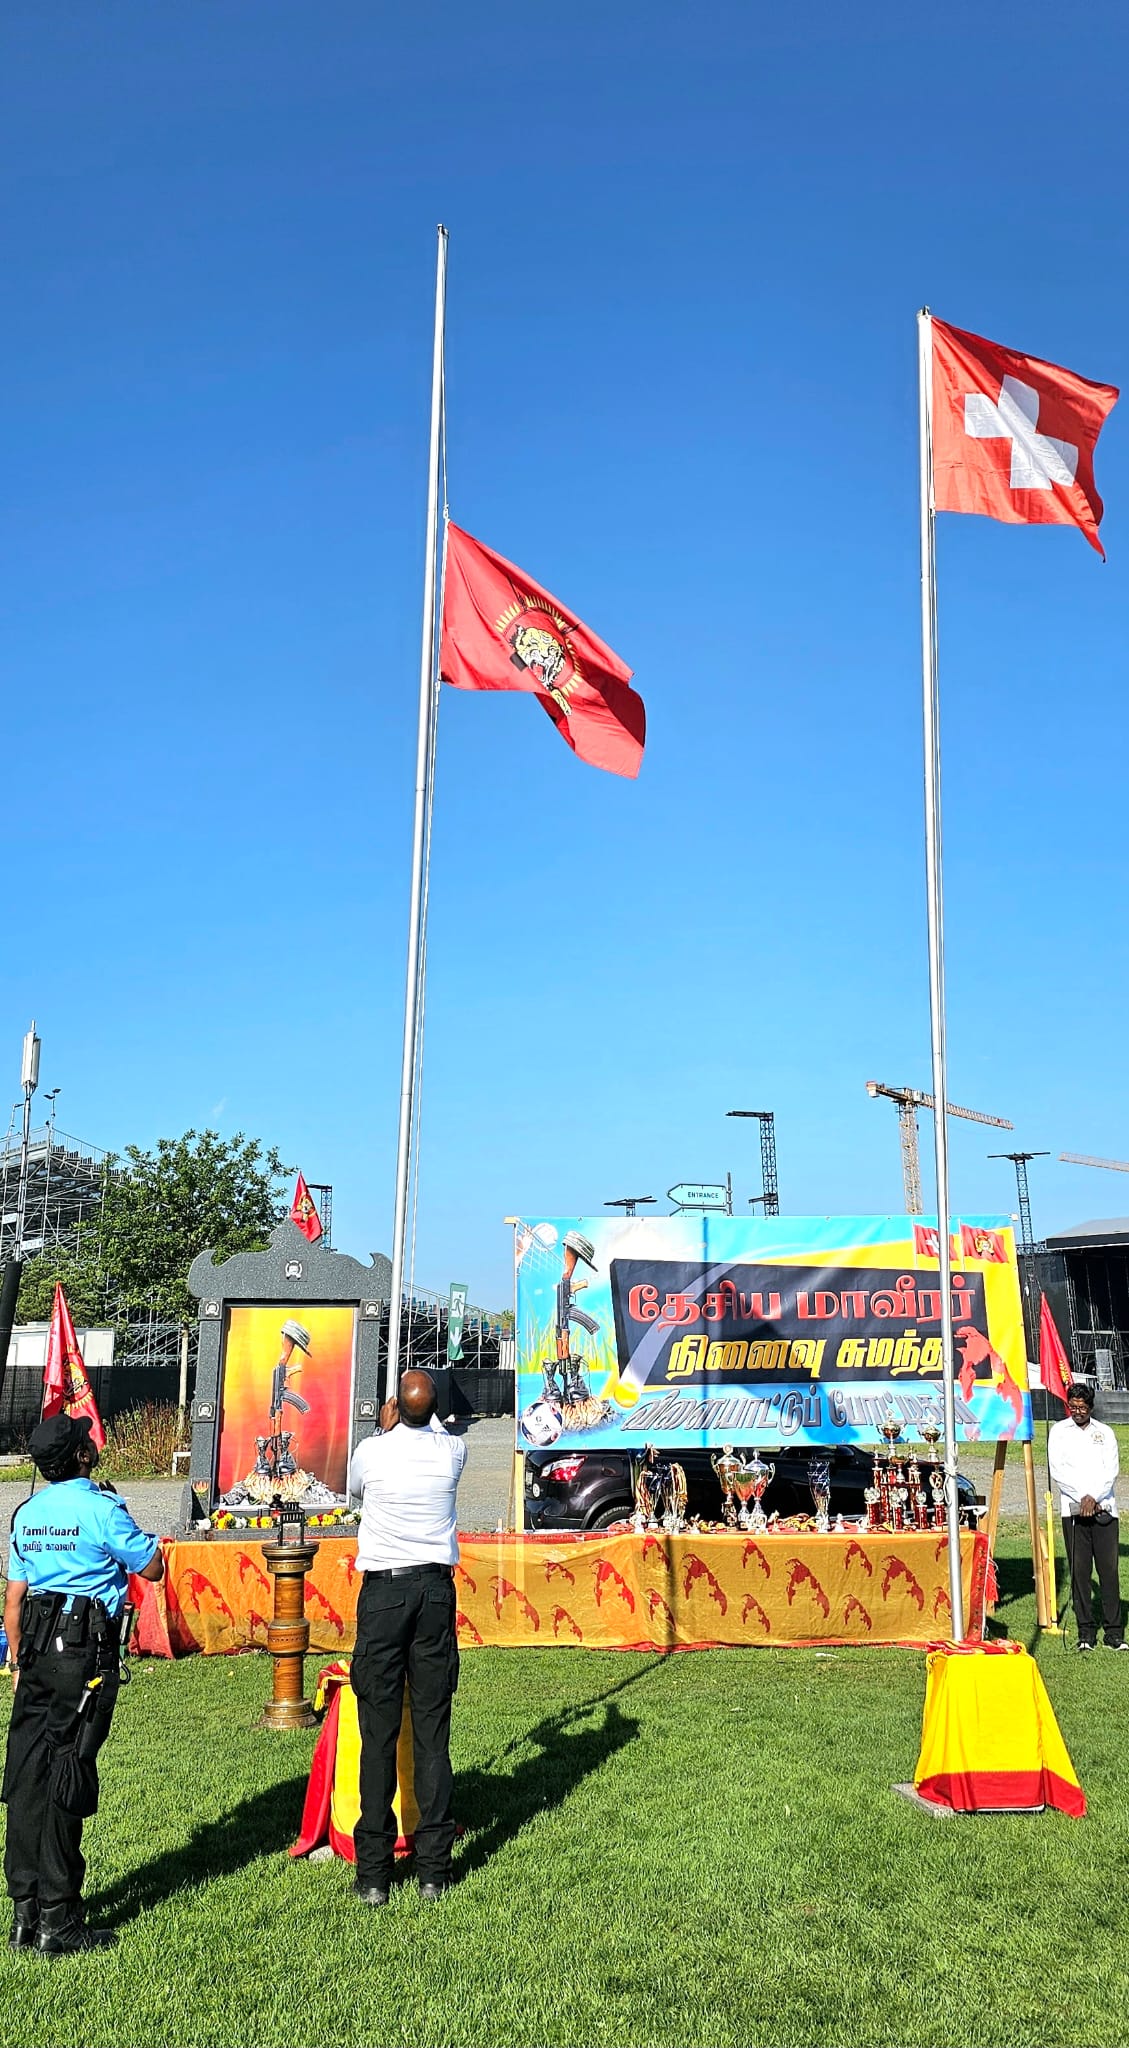 சுவிசில் சிறப்பாக நடைபெற்ற தமிழீழத் தேசிய மாவீரர் நினைவு சுமந்த விளையாட்டுப் போட்டிகள் 2023! 130